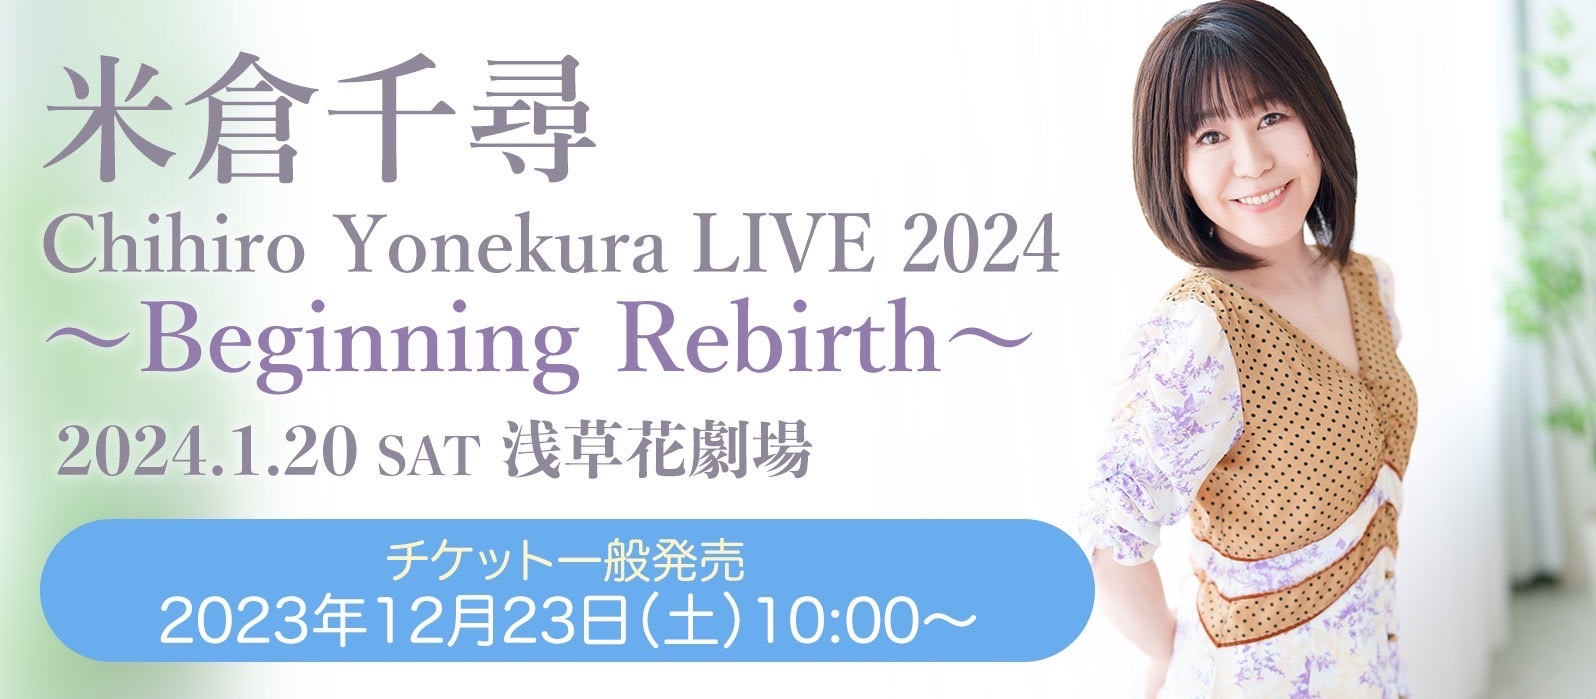 S席完売御礼&#128149;『Chihiro Yonekura LIVE 2024 〜Beginning Rebirth〜』チケット一般発売開始！_a0114206_17060388.jpeg